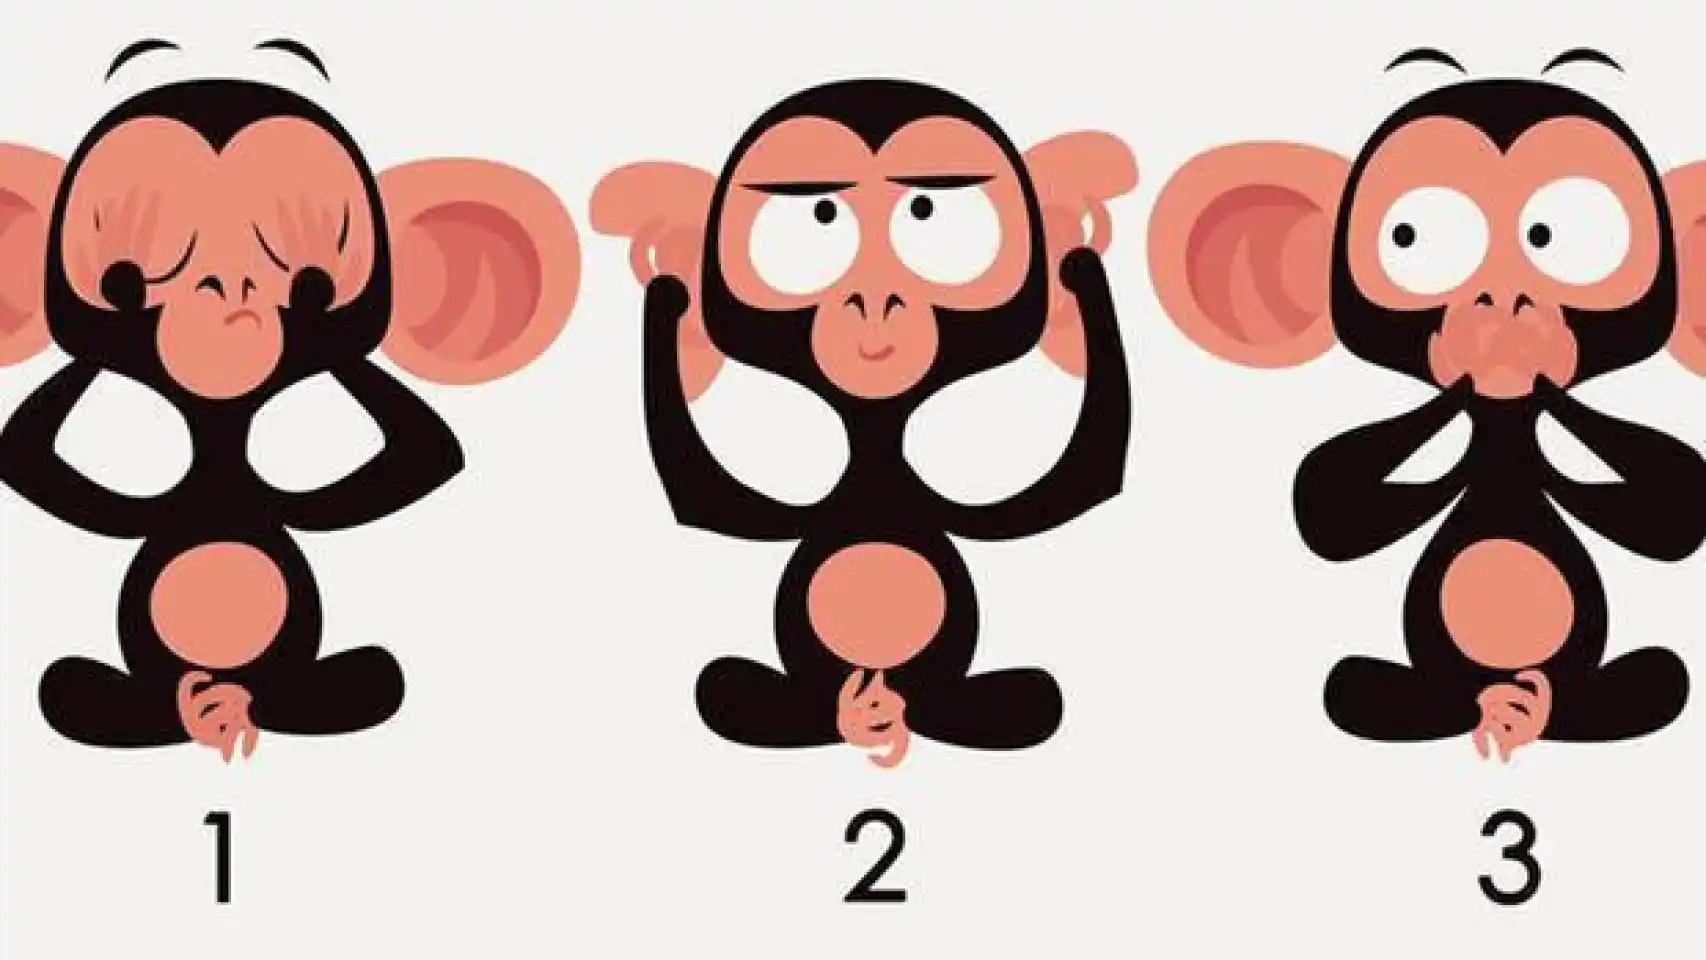 test de inteligencia para monos - Puedes realizar pruebas en monos